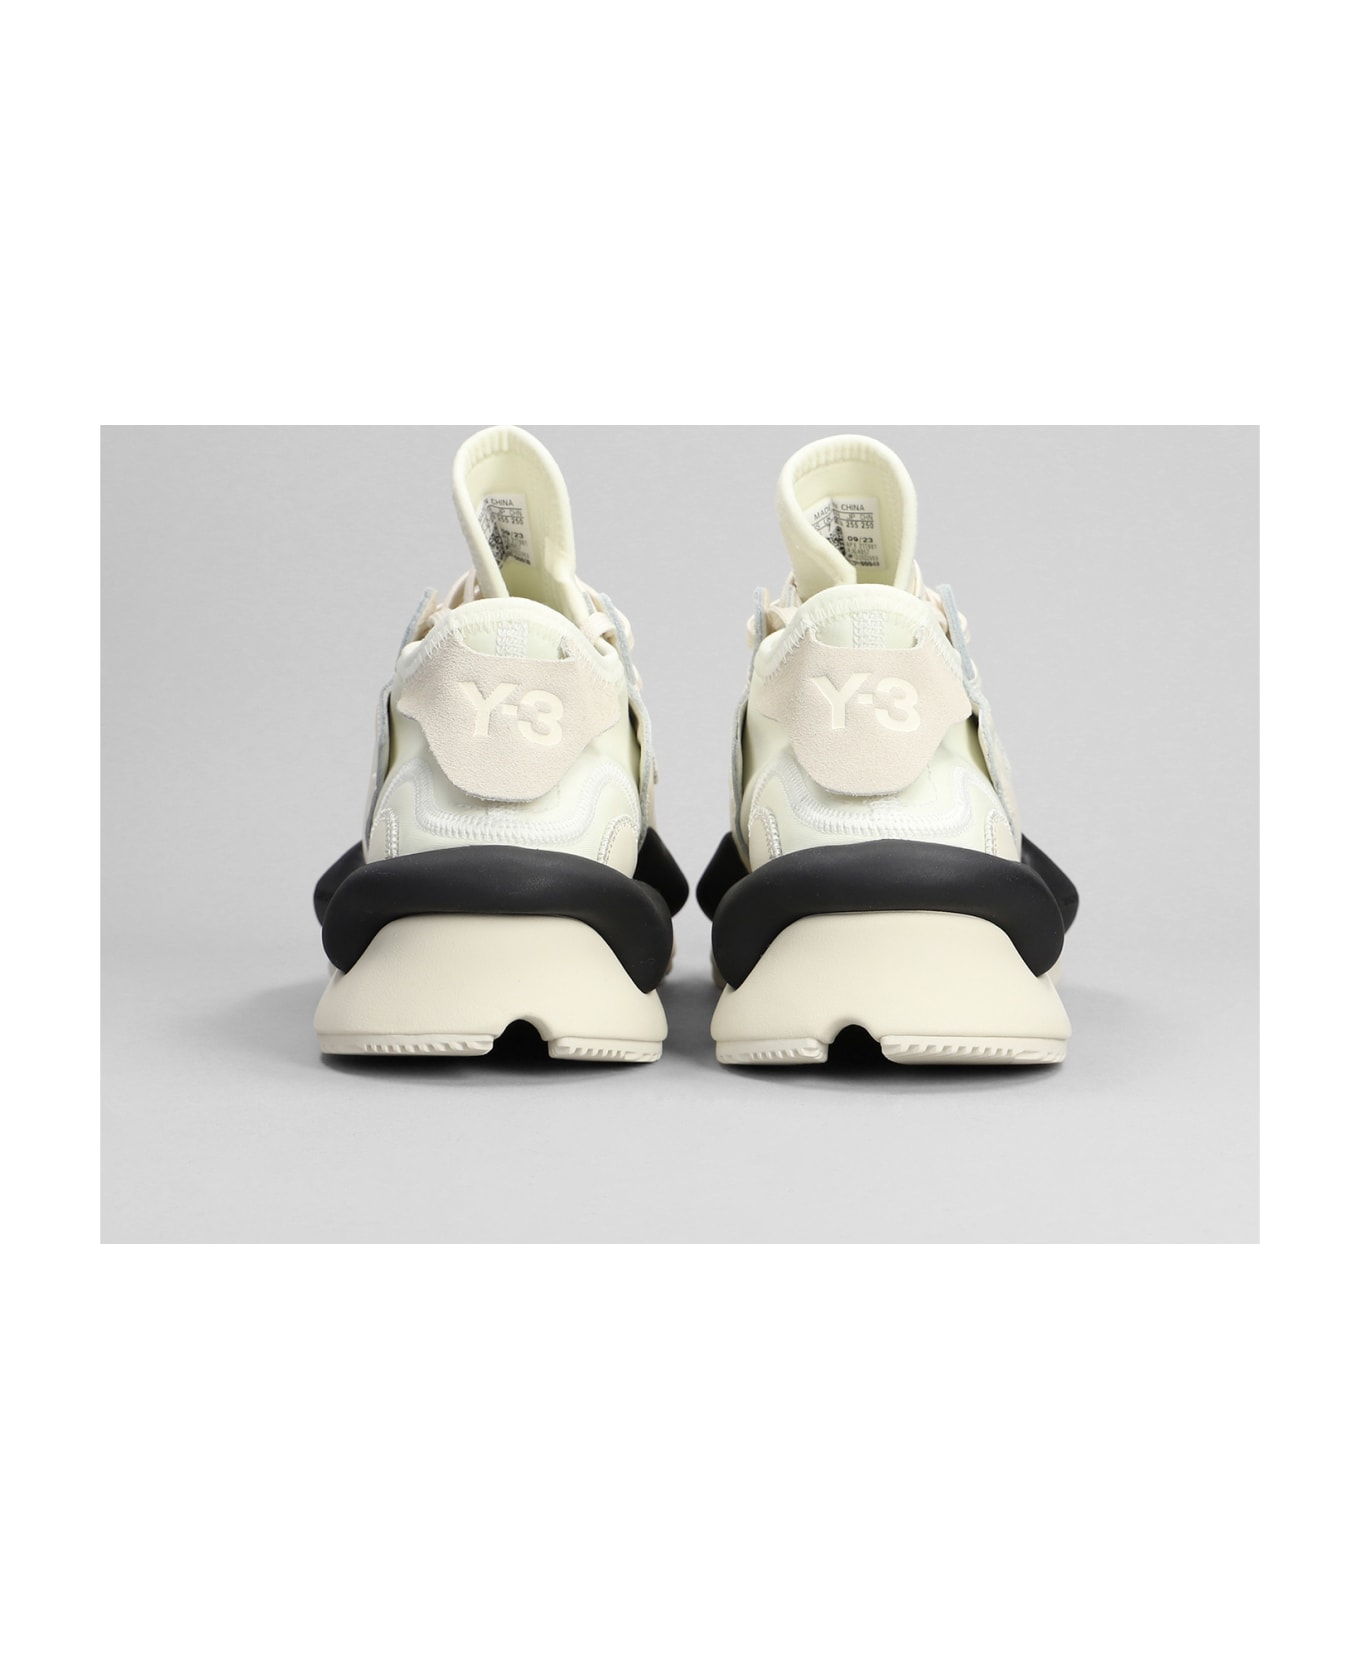 Y-3 Kaiwa Sneakers In Beige Leather - CREAMWHITEOFFWHITEBLACK スニーカー